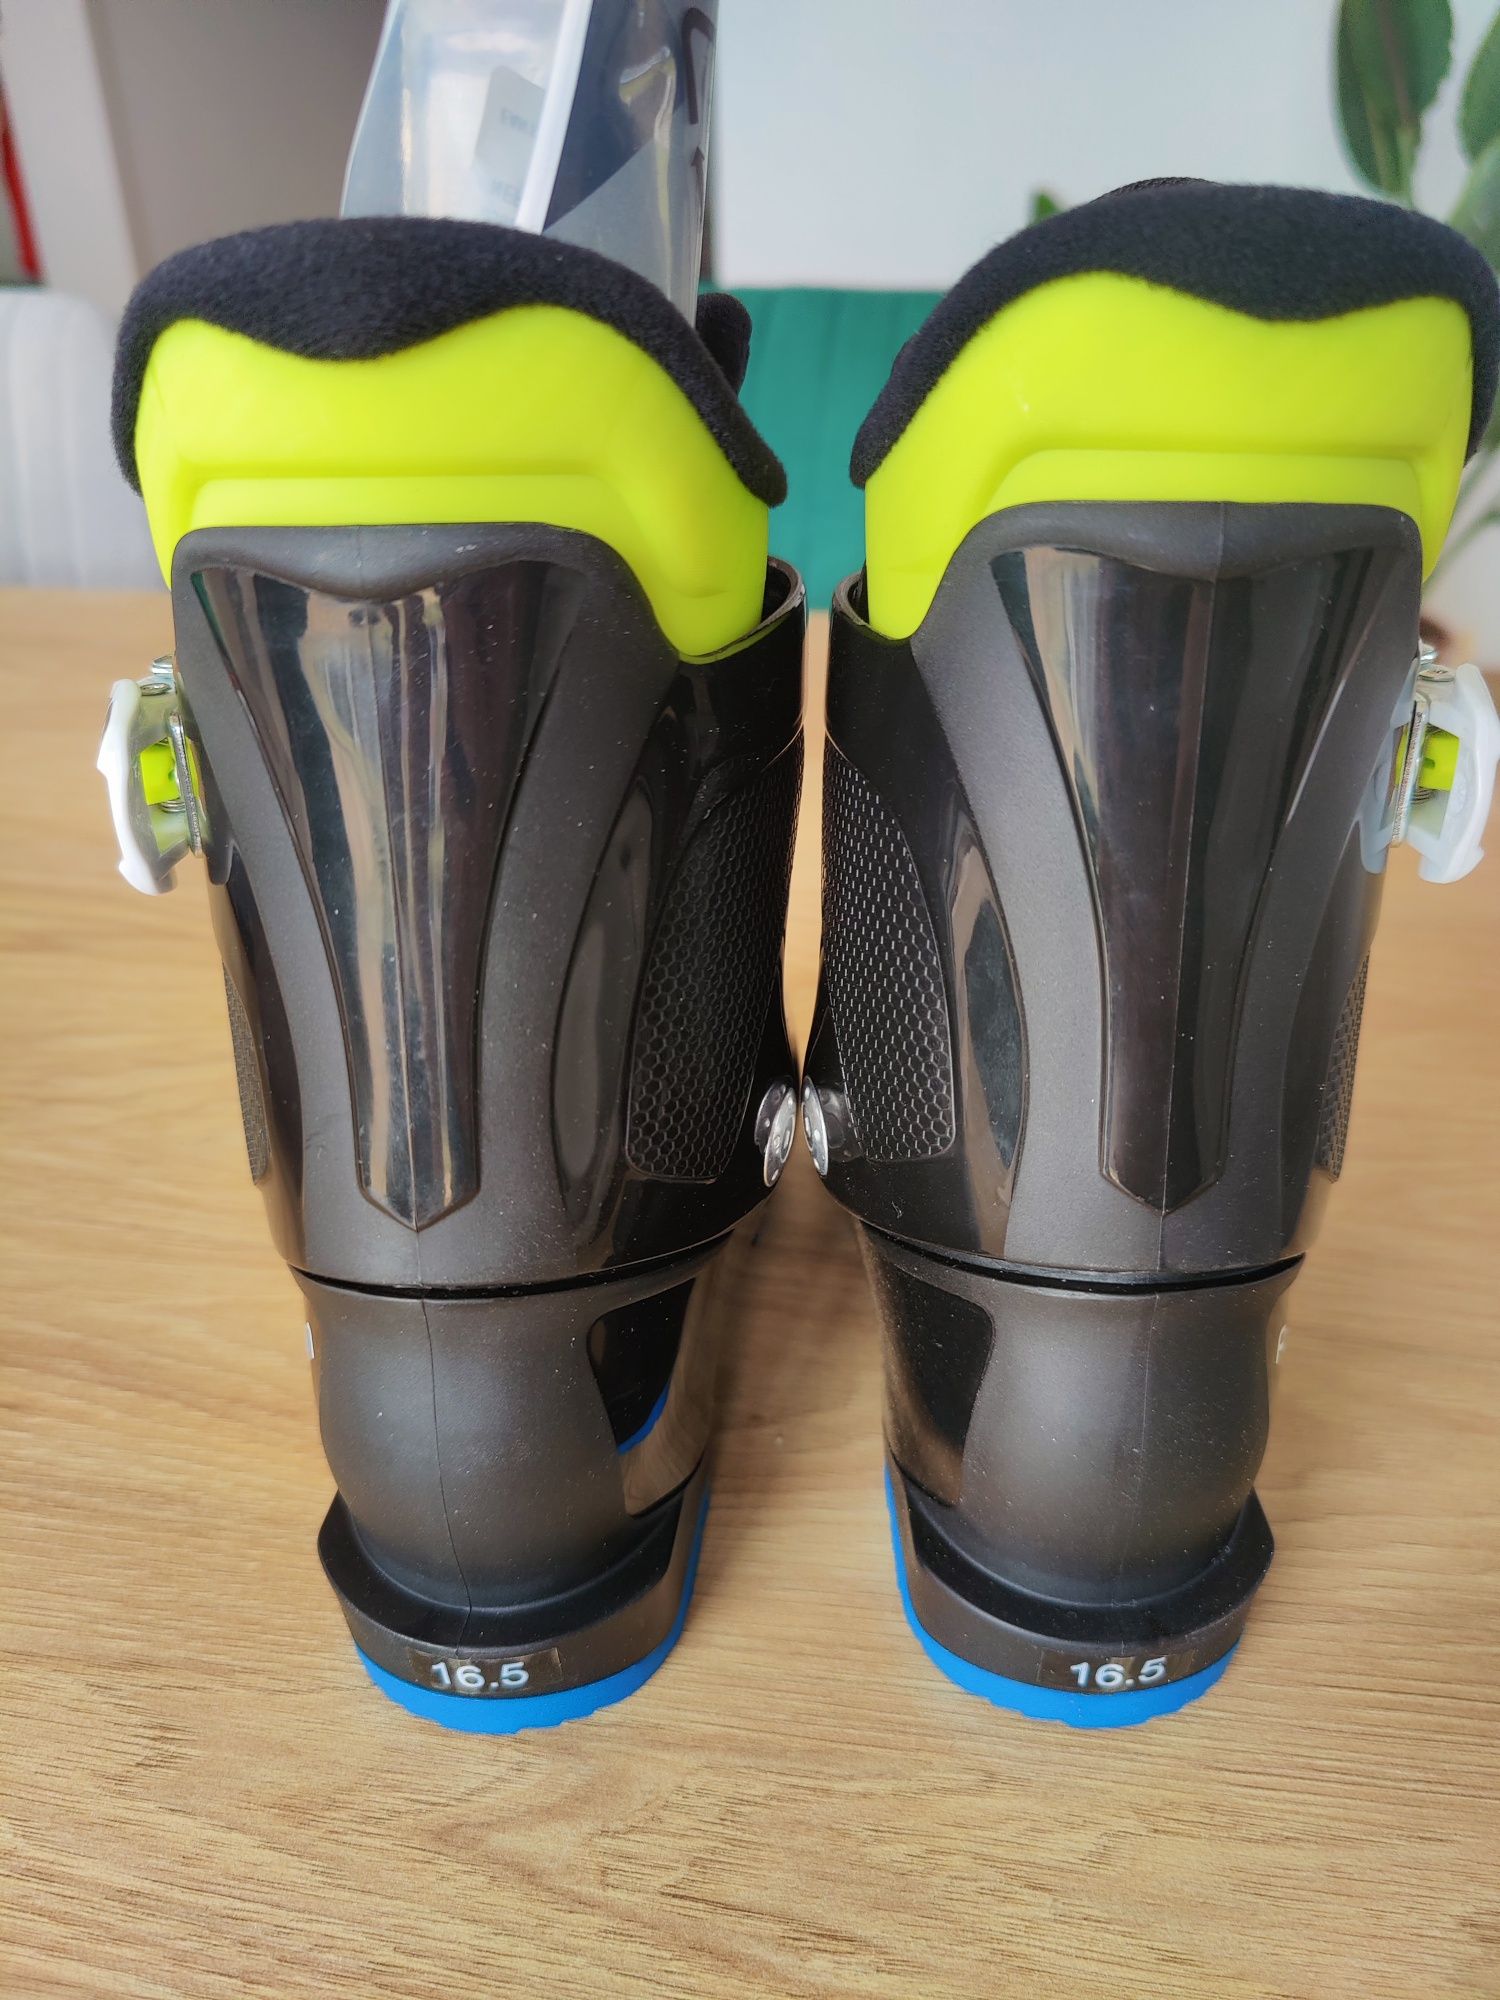 Buty narciarskie dla dzieci Nordica Pcarv 16.5cm nowe